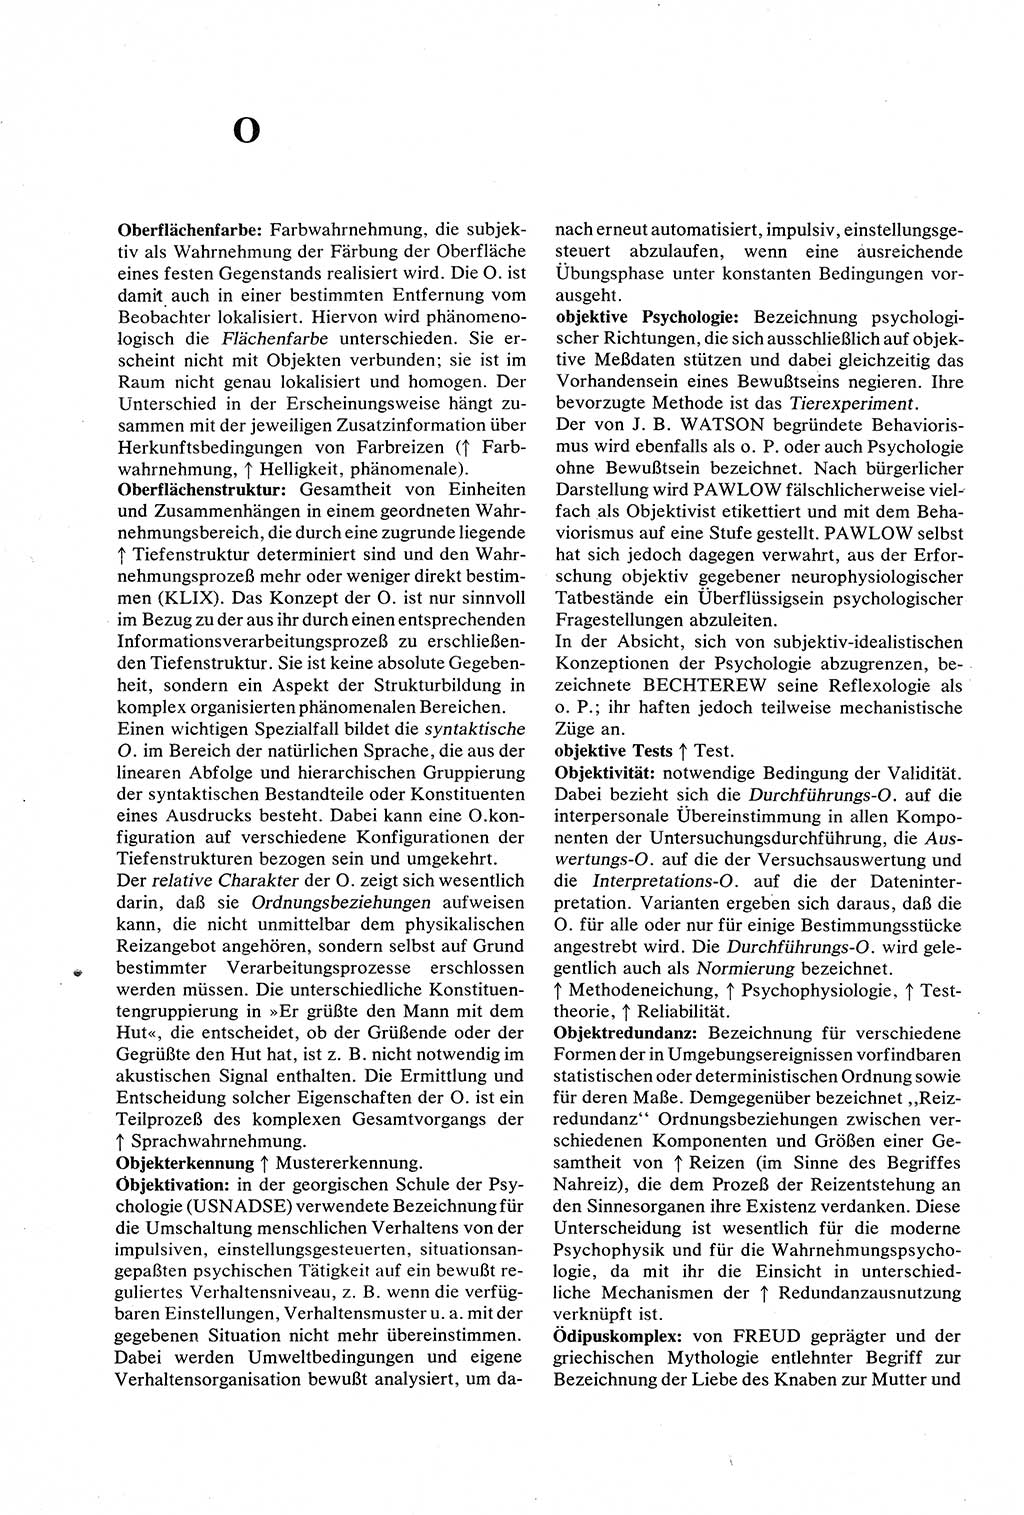 Wörterbuch der Psychologie [Deutsche Demokratische Republik (DDR)] 1976, Seite 372 (Wb. Psych. DDR 1976, S. 372)